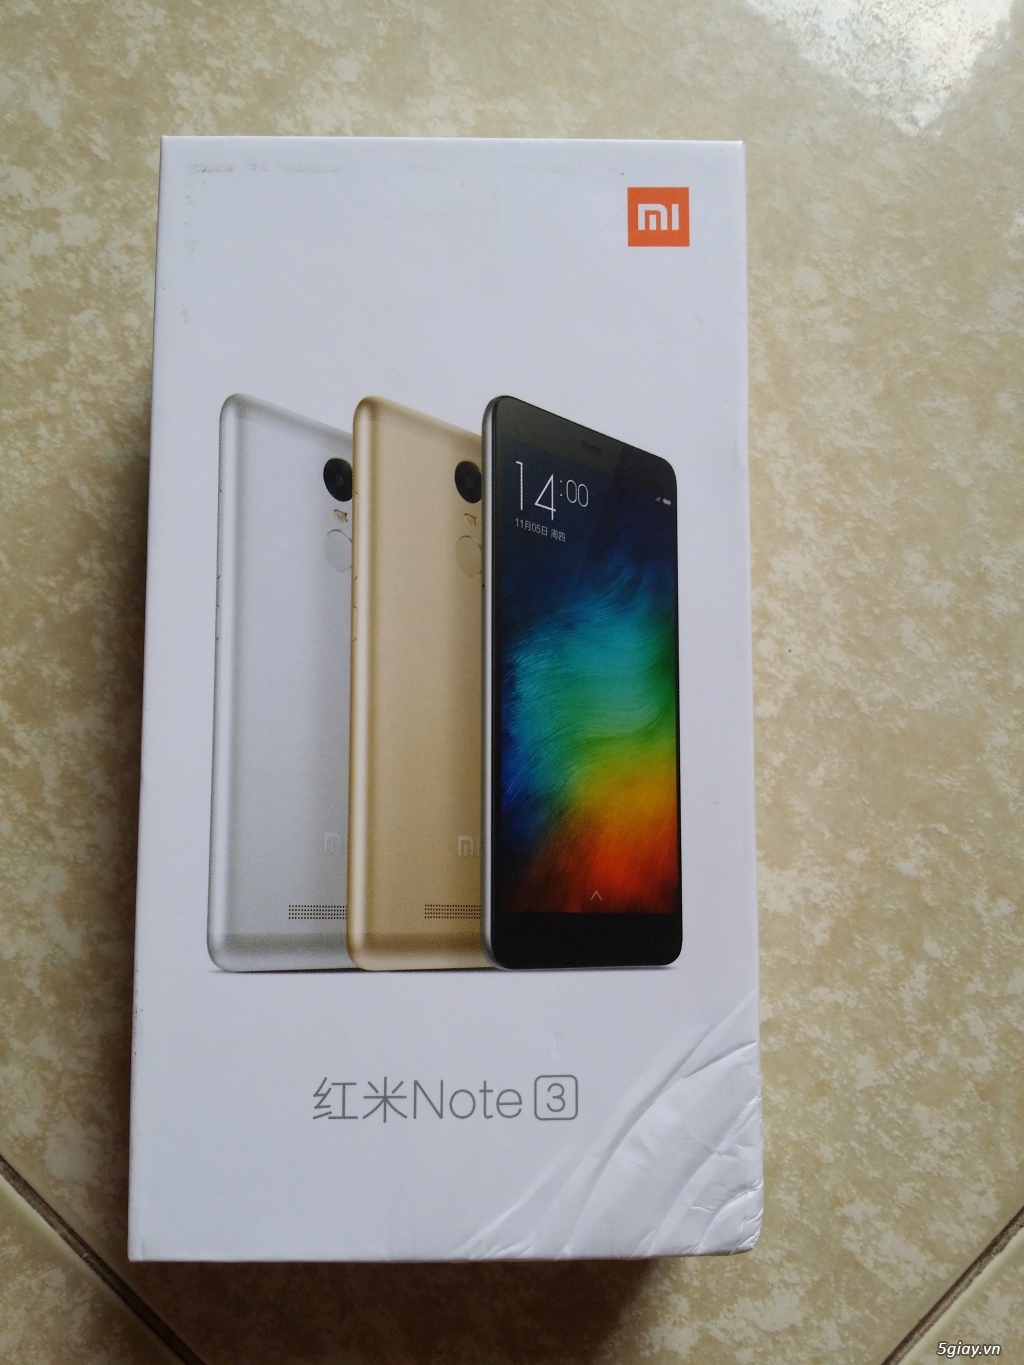 Xiaomi Redmi Note 3 Gold Ram 3G/32G like new 99,9% bh 12 tháng - 1